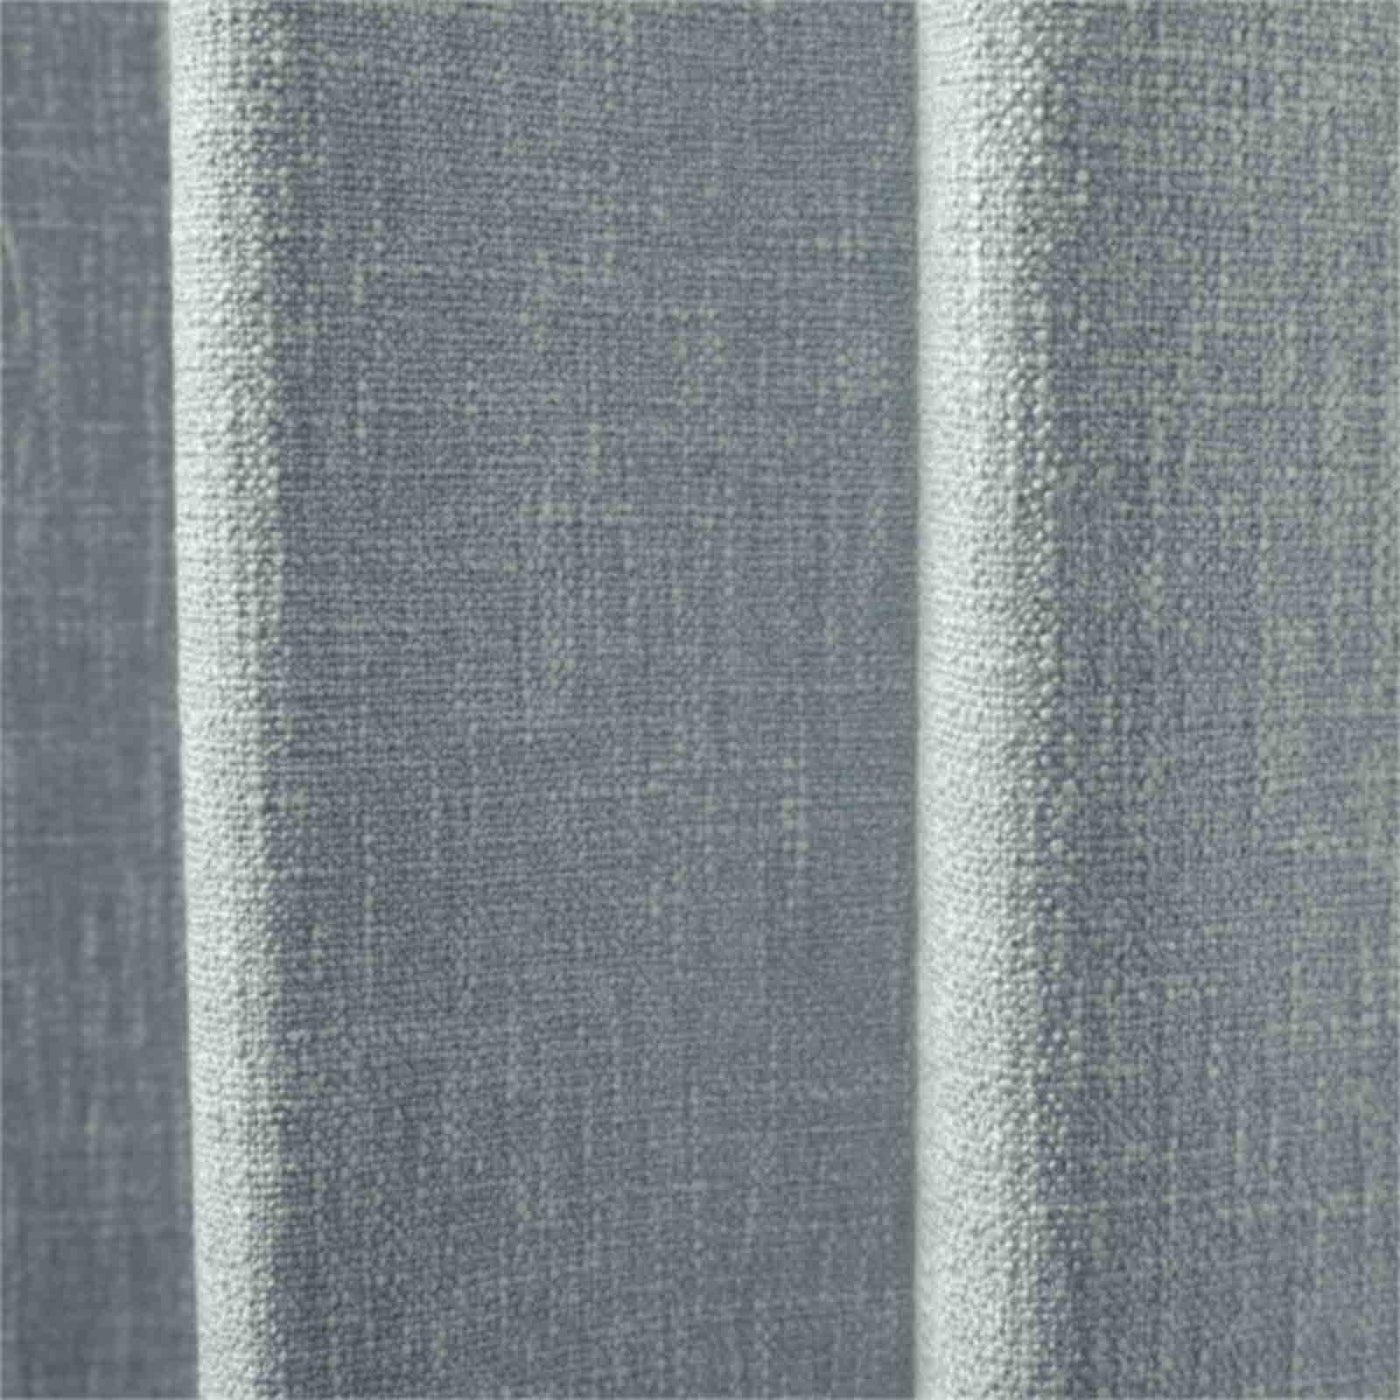 Sarai Textured Polyester Cotton Curtain Grommet